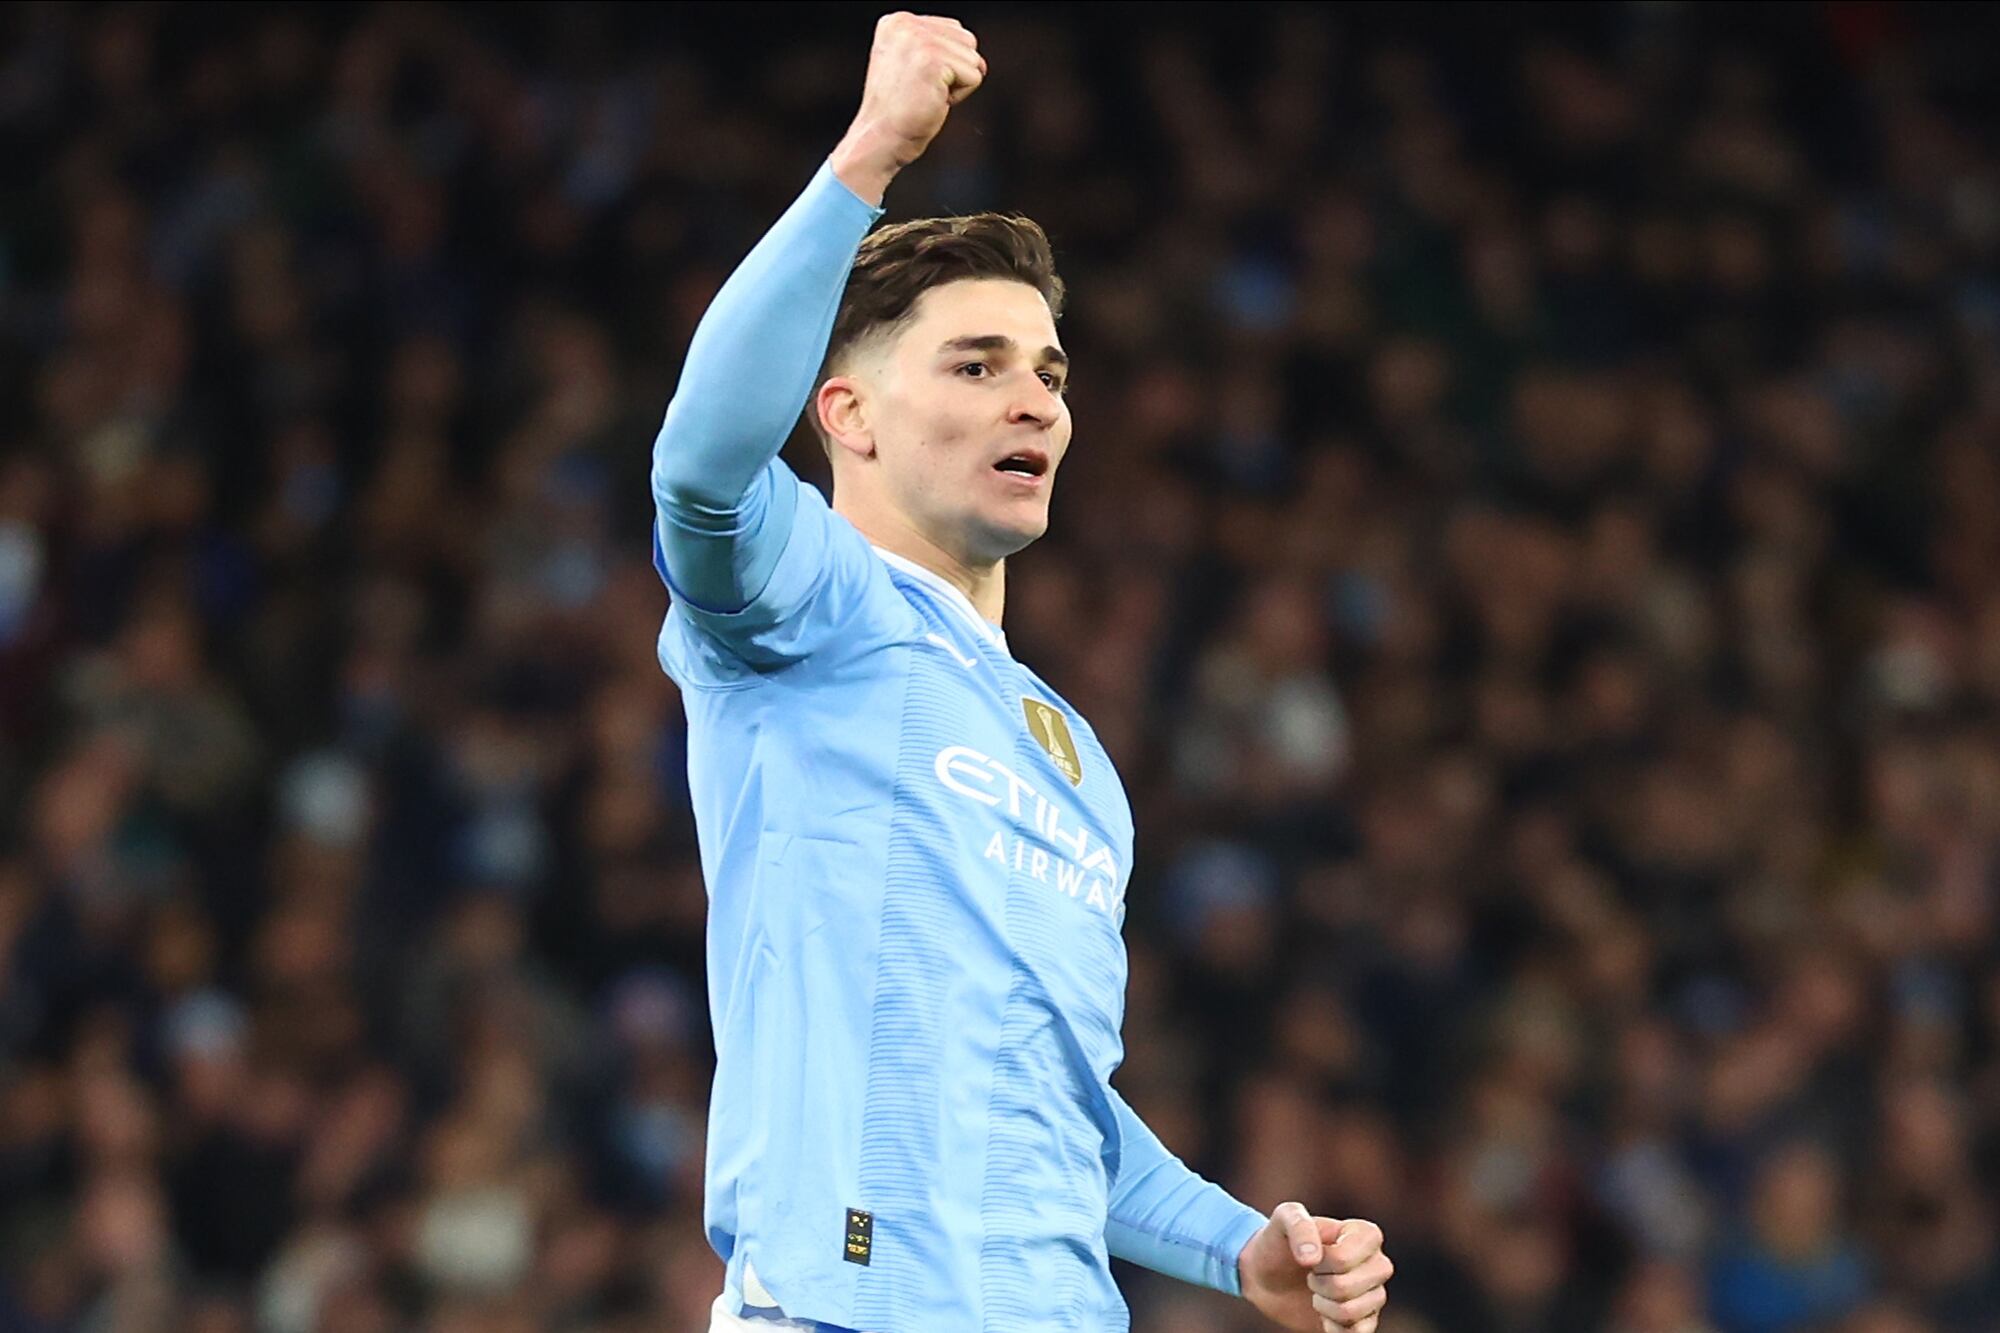 Julián Álvarez levanta el brazo tras meter su penal; Manchester City se ponía 1-0 en la definición, pero enseguida cambió todo